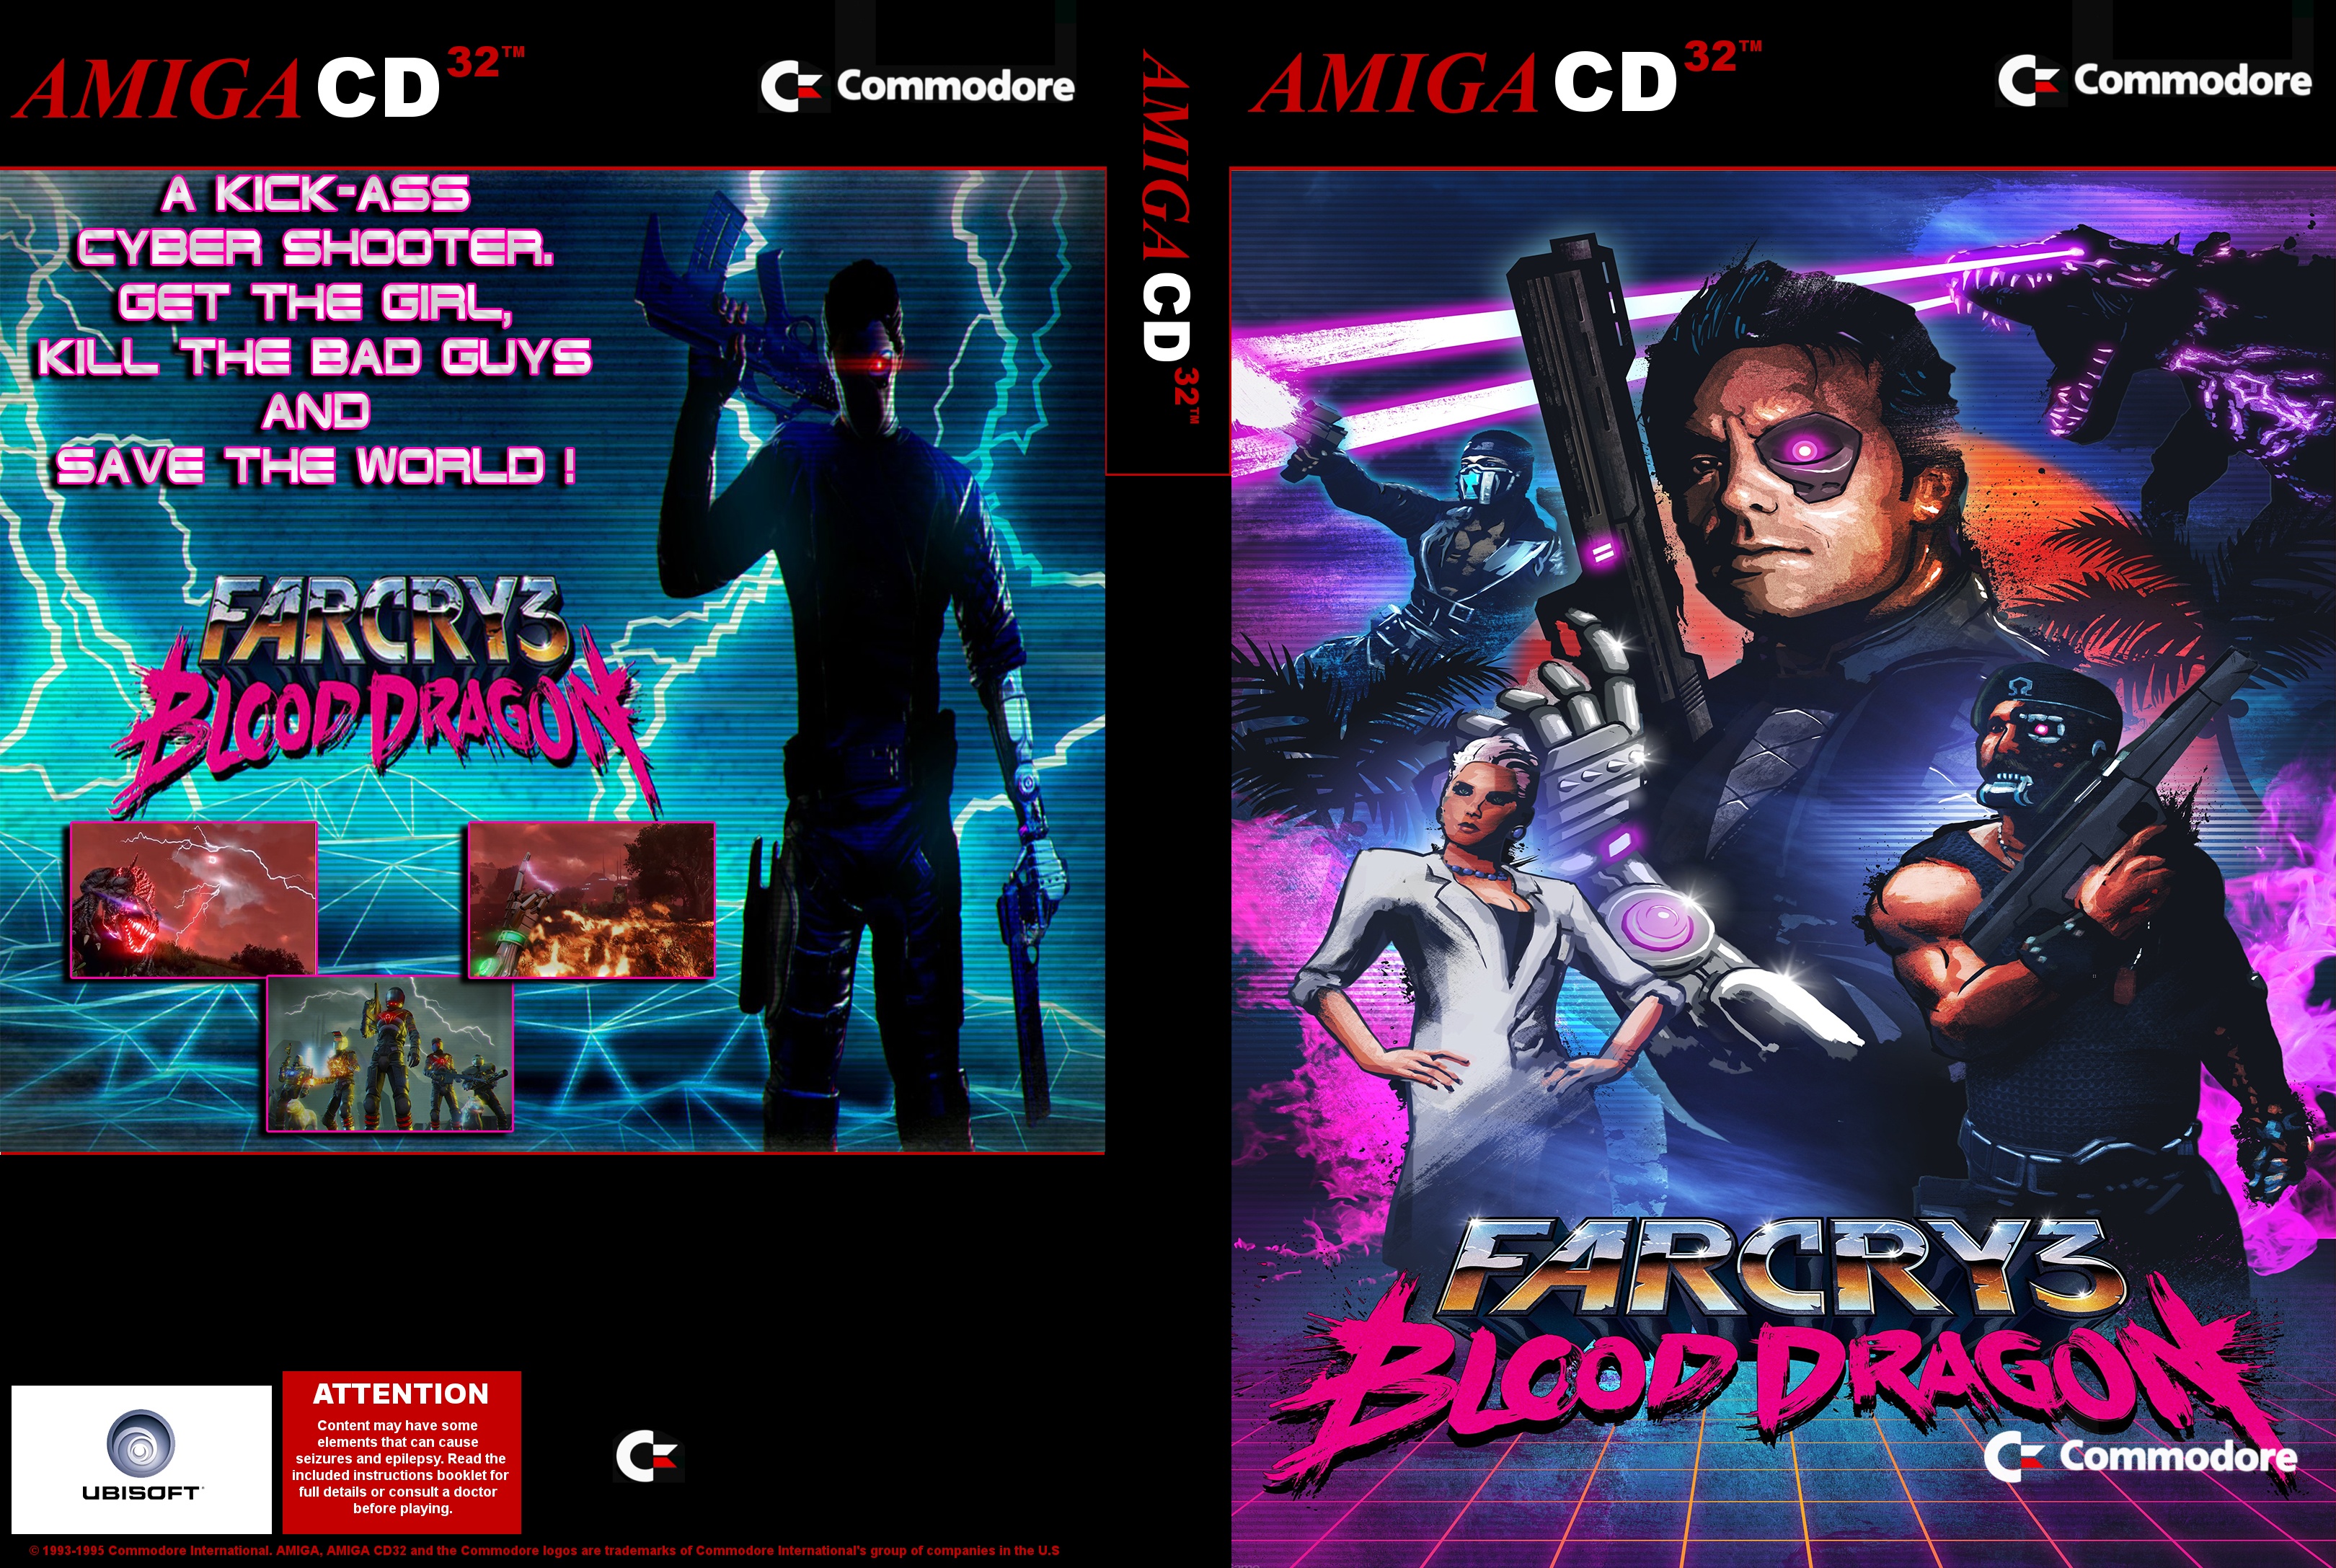 Far Cry 3: Blood Dragon Amiga CD 32 box cover